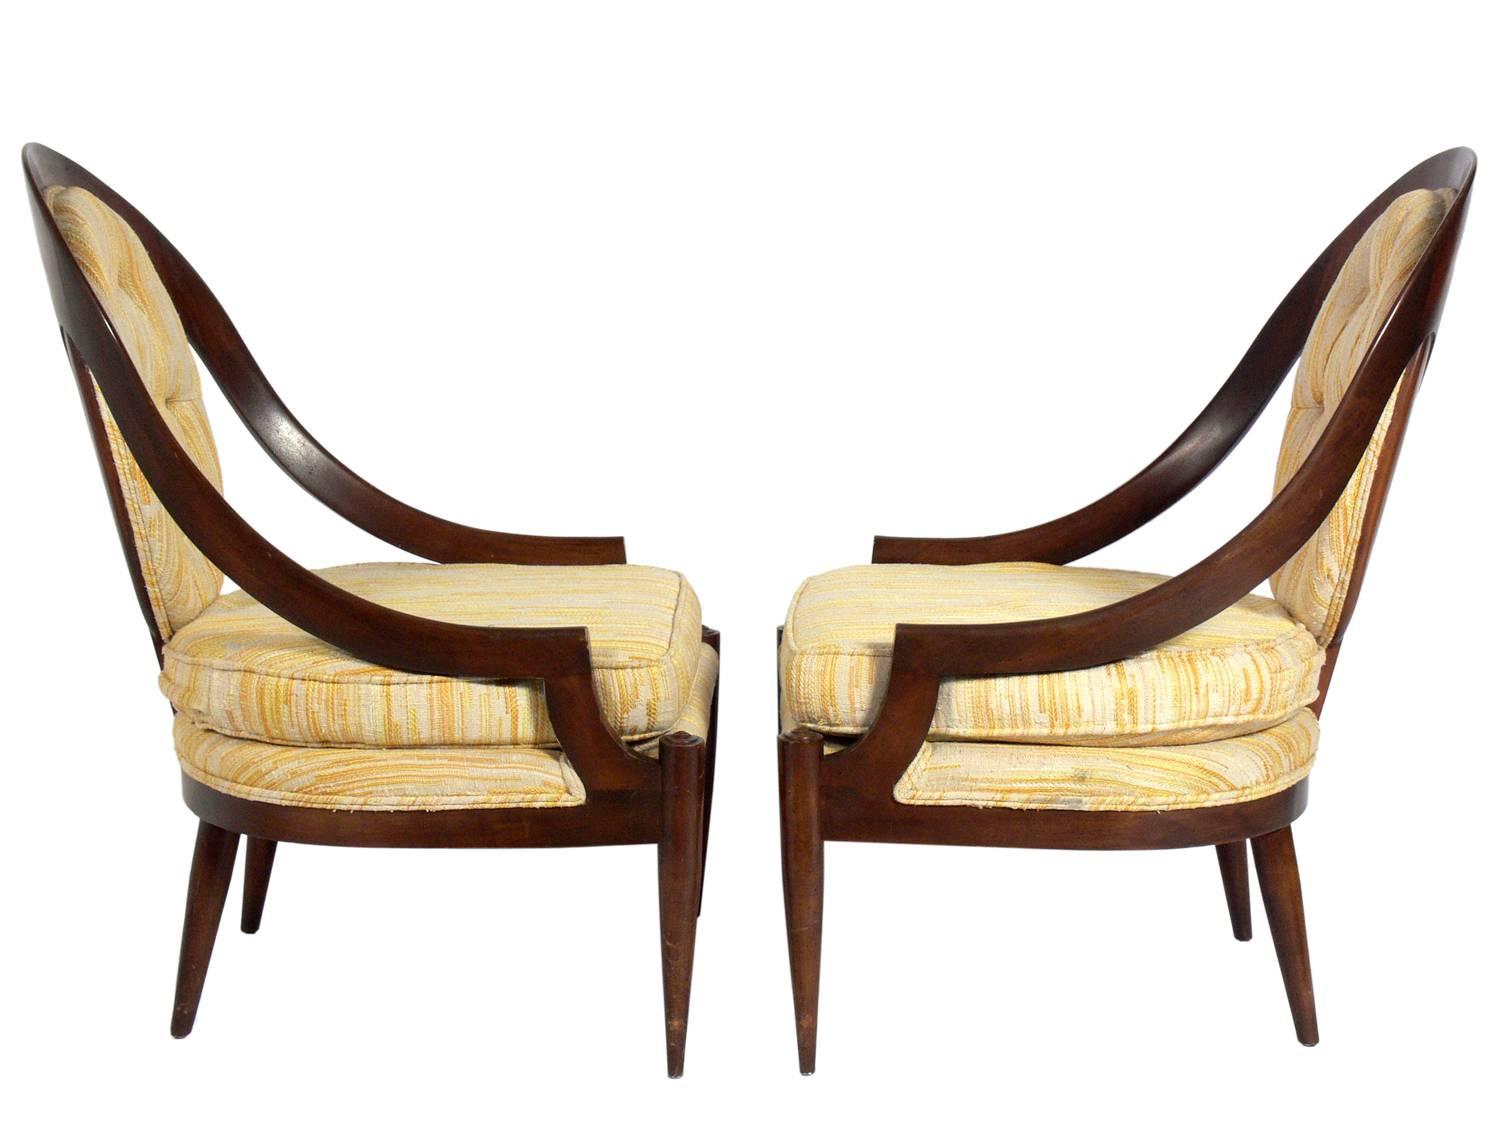 Paar geschwungene Löffelrücken-Sessel, amerikanisch, um 1950. Sie müssen neu gepolstert werden. Der unten angegebene Preis beinhaltet die Neupolsterung in Ihrem Stoff.